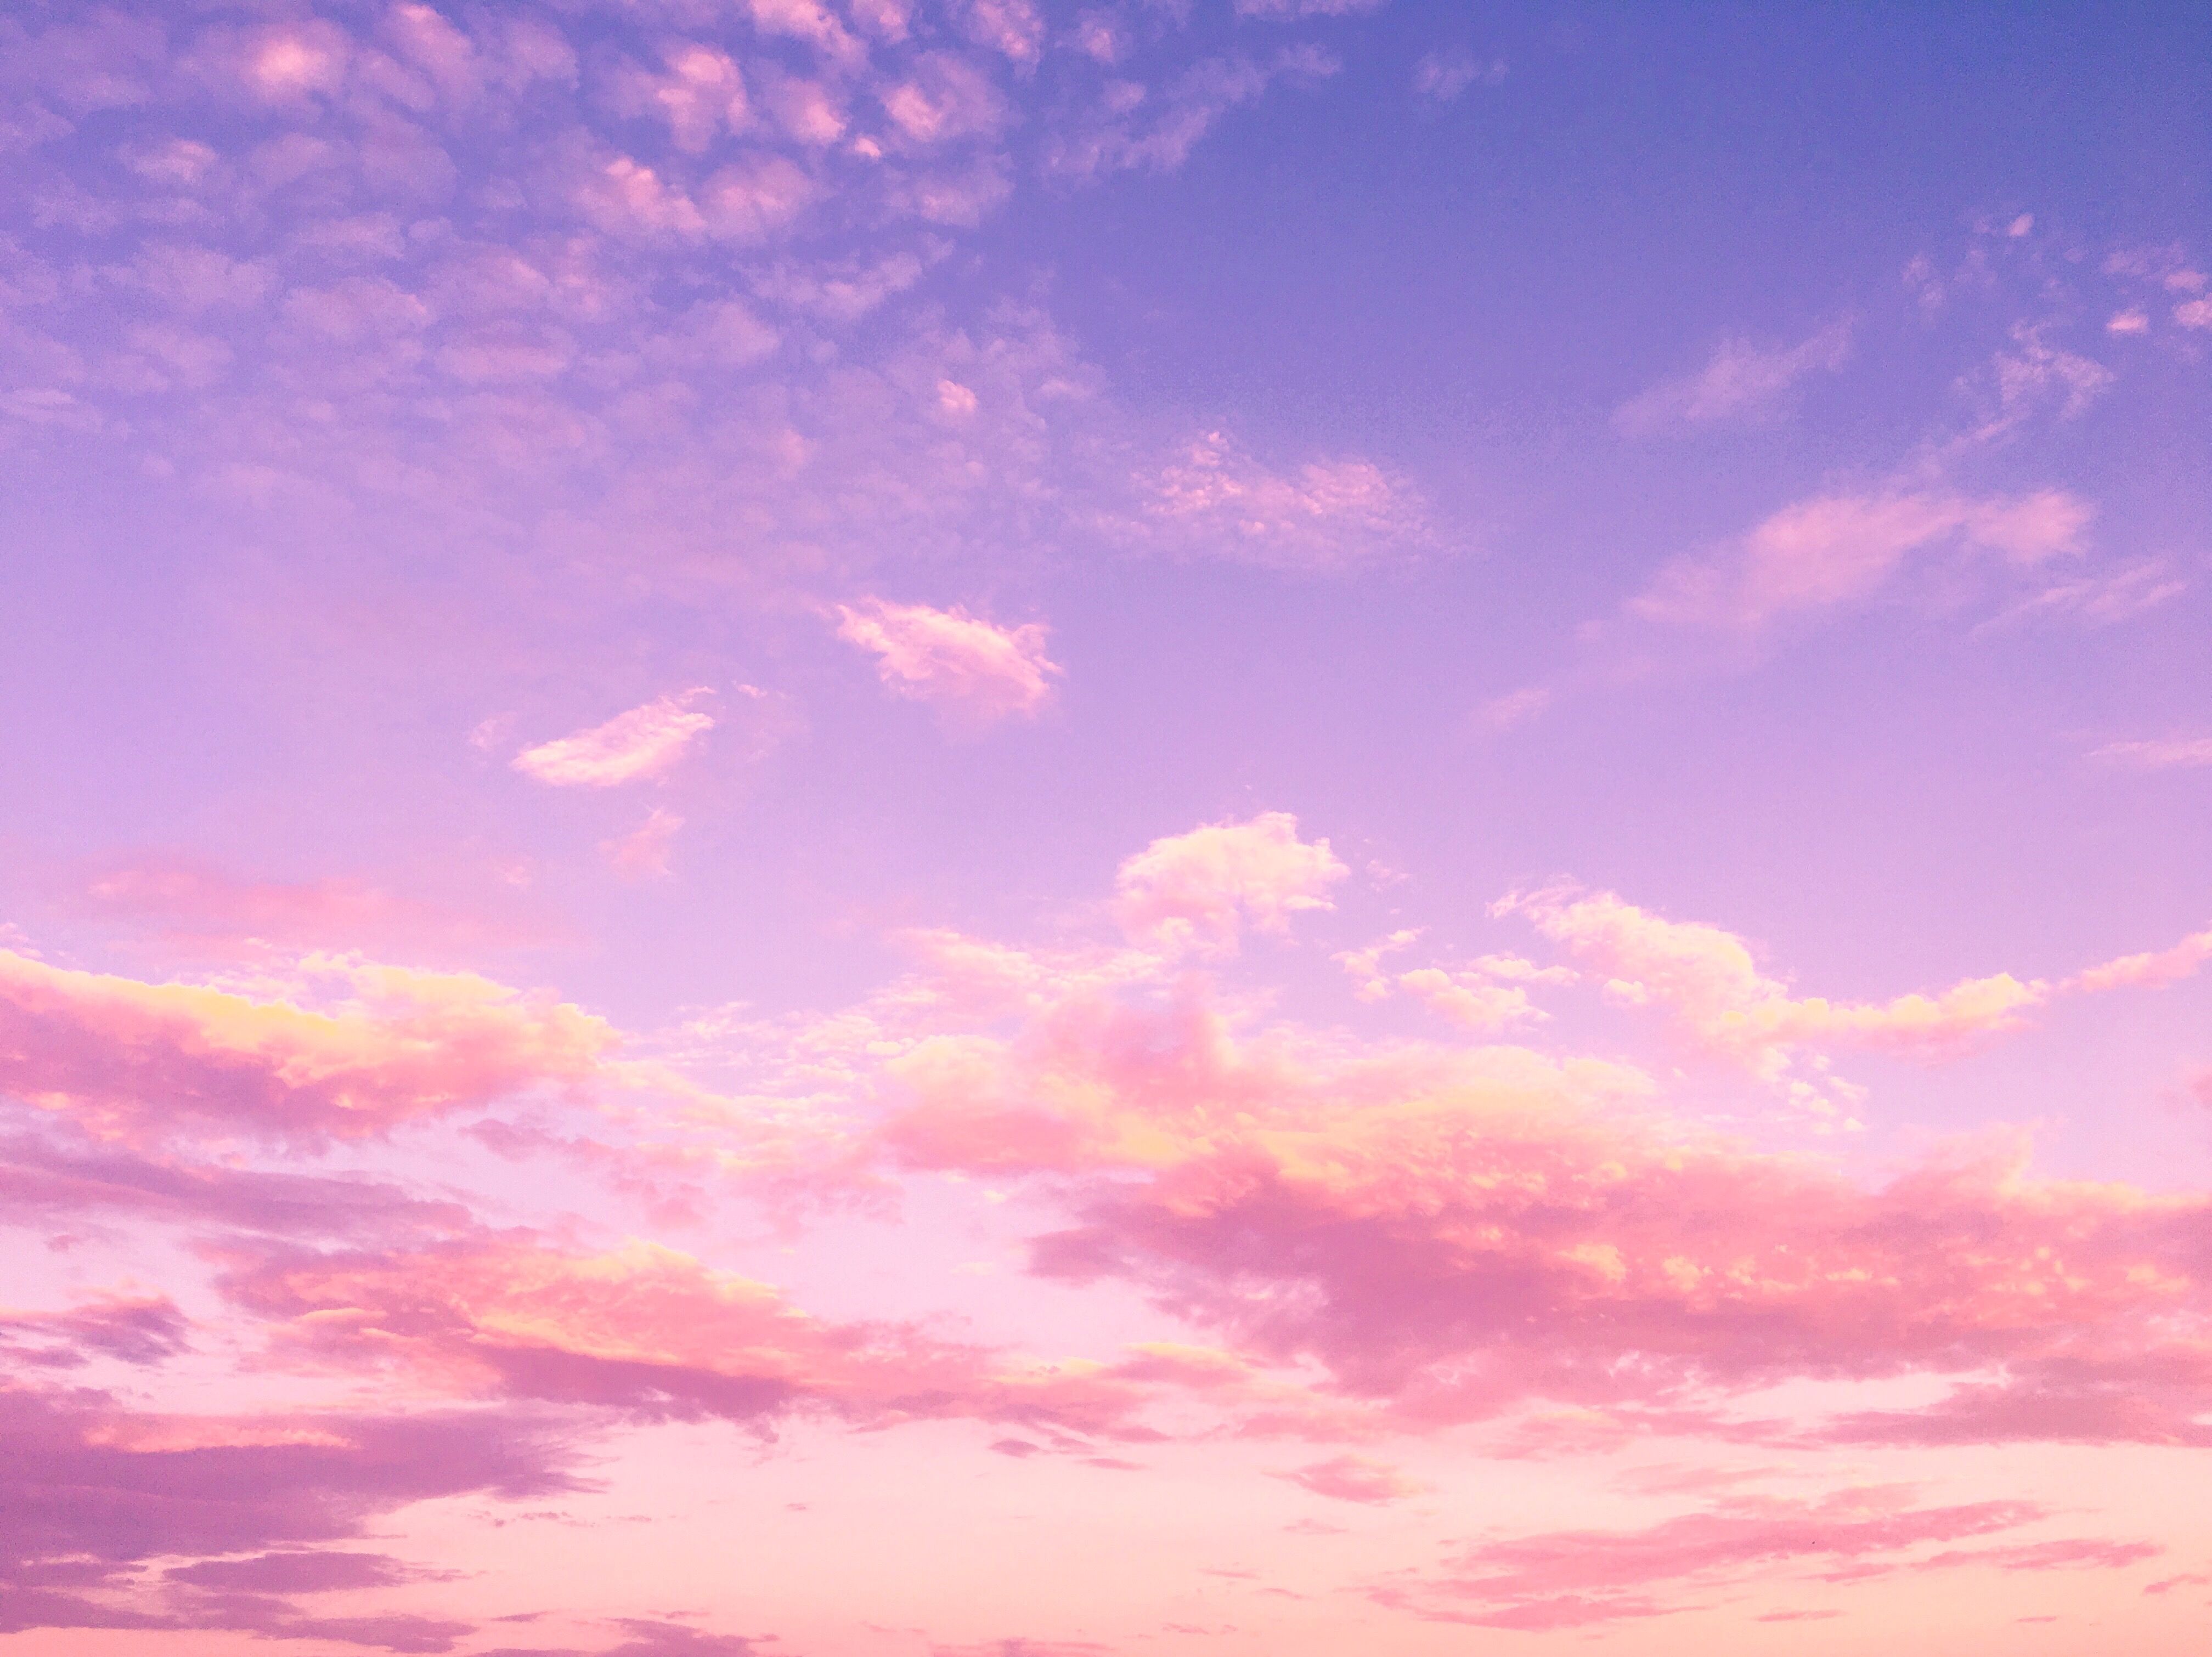 Hãy trang trí cho màn hình điện thoại của bạn với hình nền bầu trời màu hồng tươi tắn và đầy sức sống này! Mỗi lần nhìn vào nó sẽ khiến bạn cảm thấy đầy năng lượng và tươi mới. Hãy cùng tận hưởng khoảnh khắc yên bình mà màu hồng tuyệt đẹp của bầu trời mang lại.